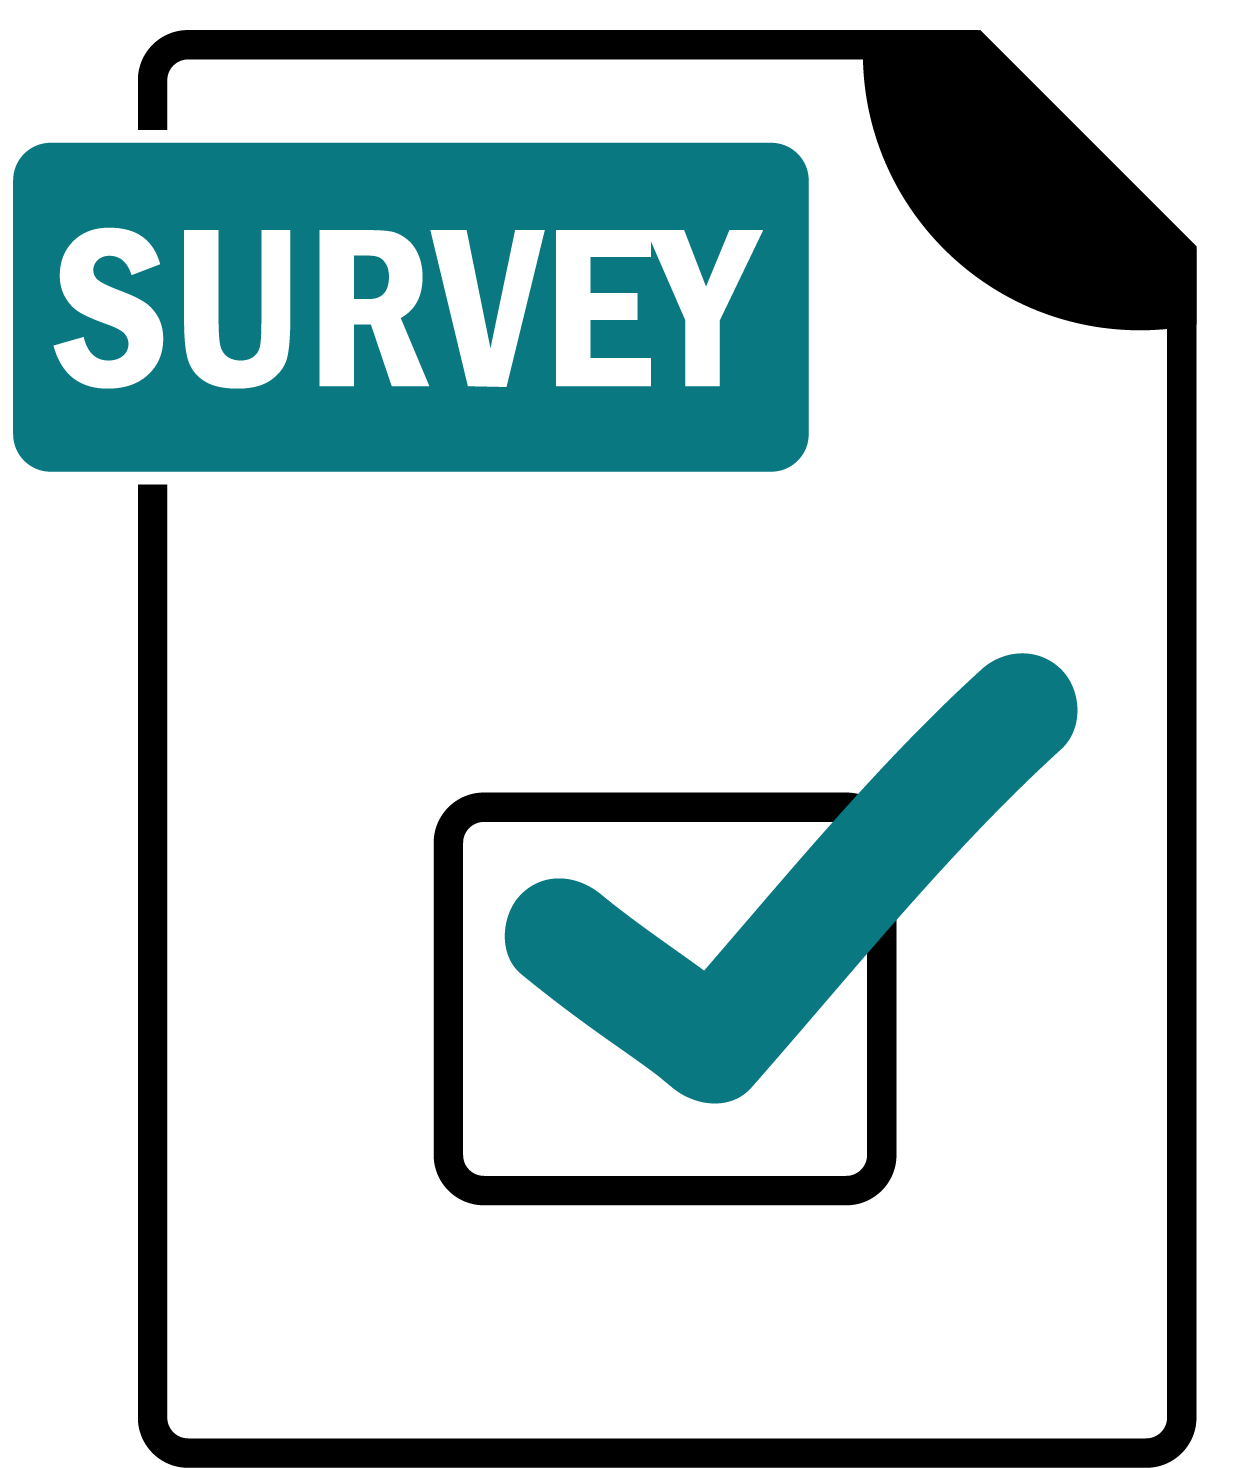 Please complete our survey